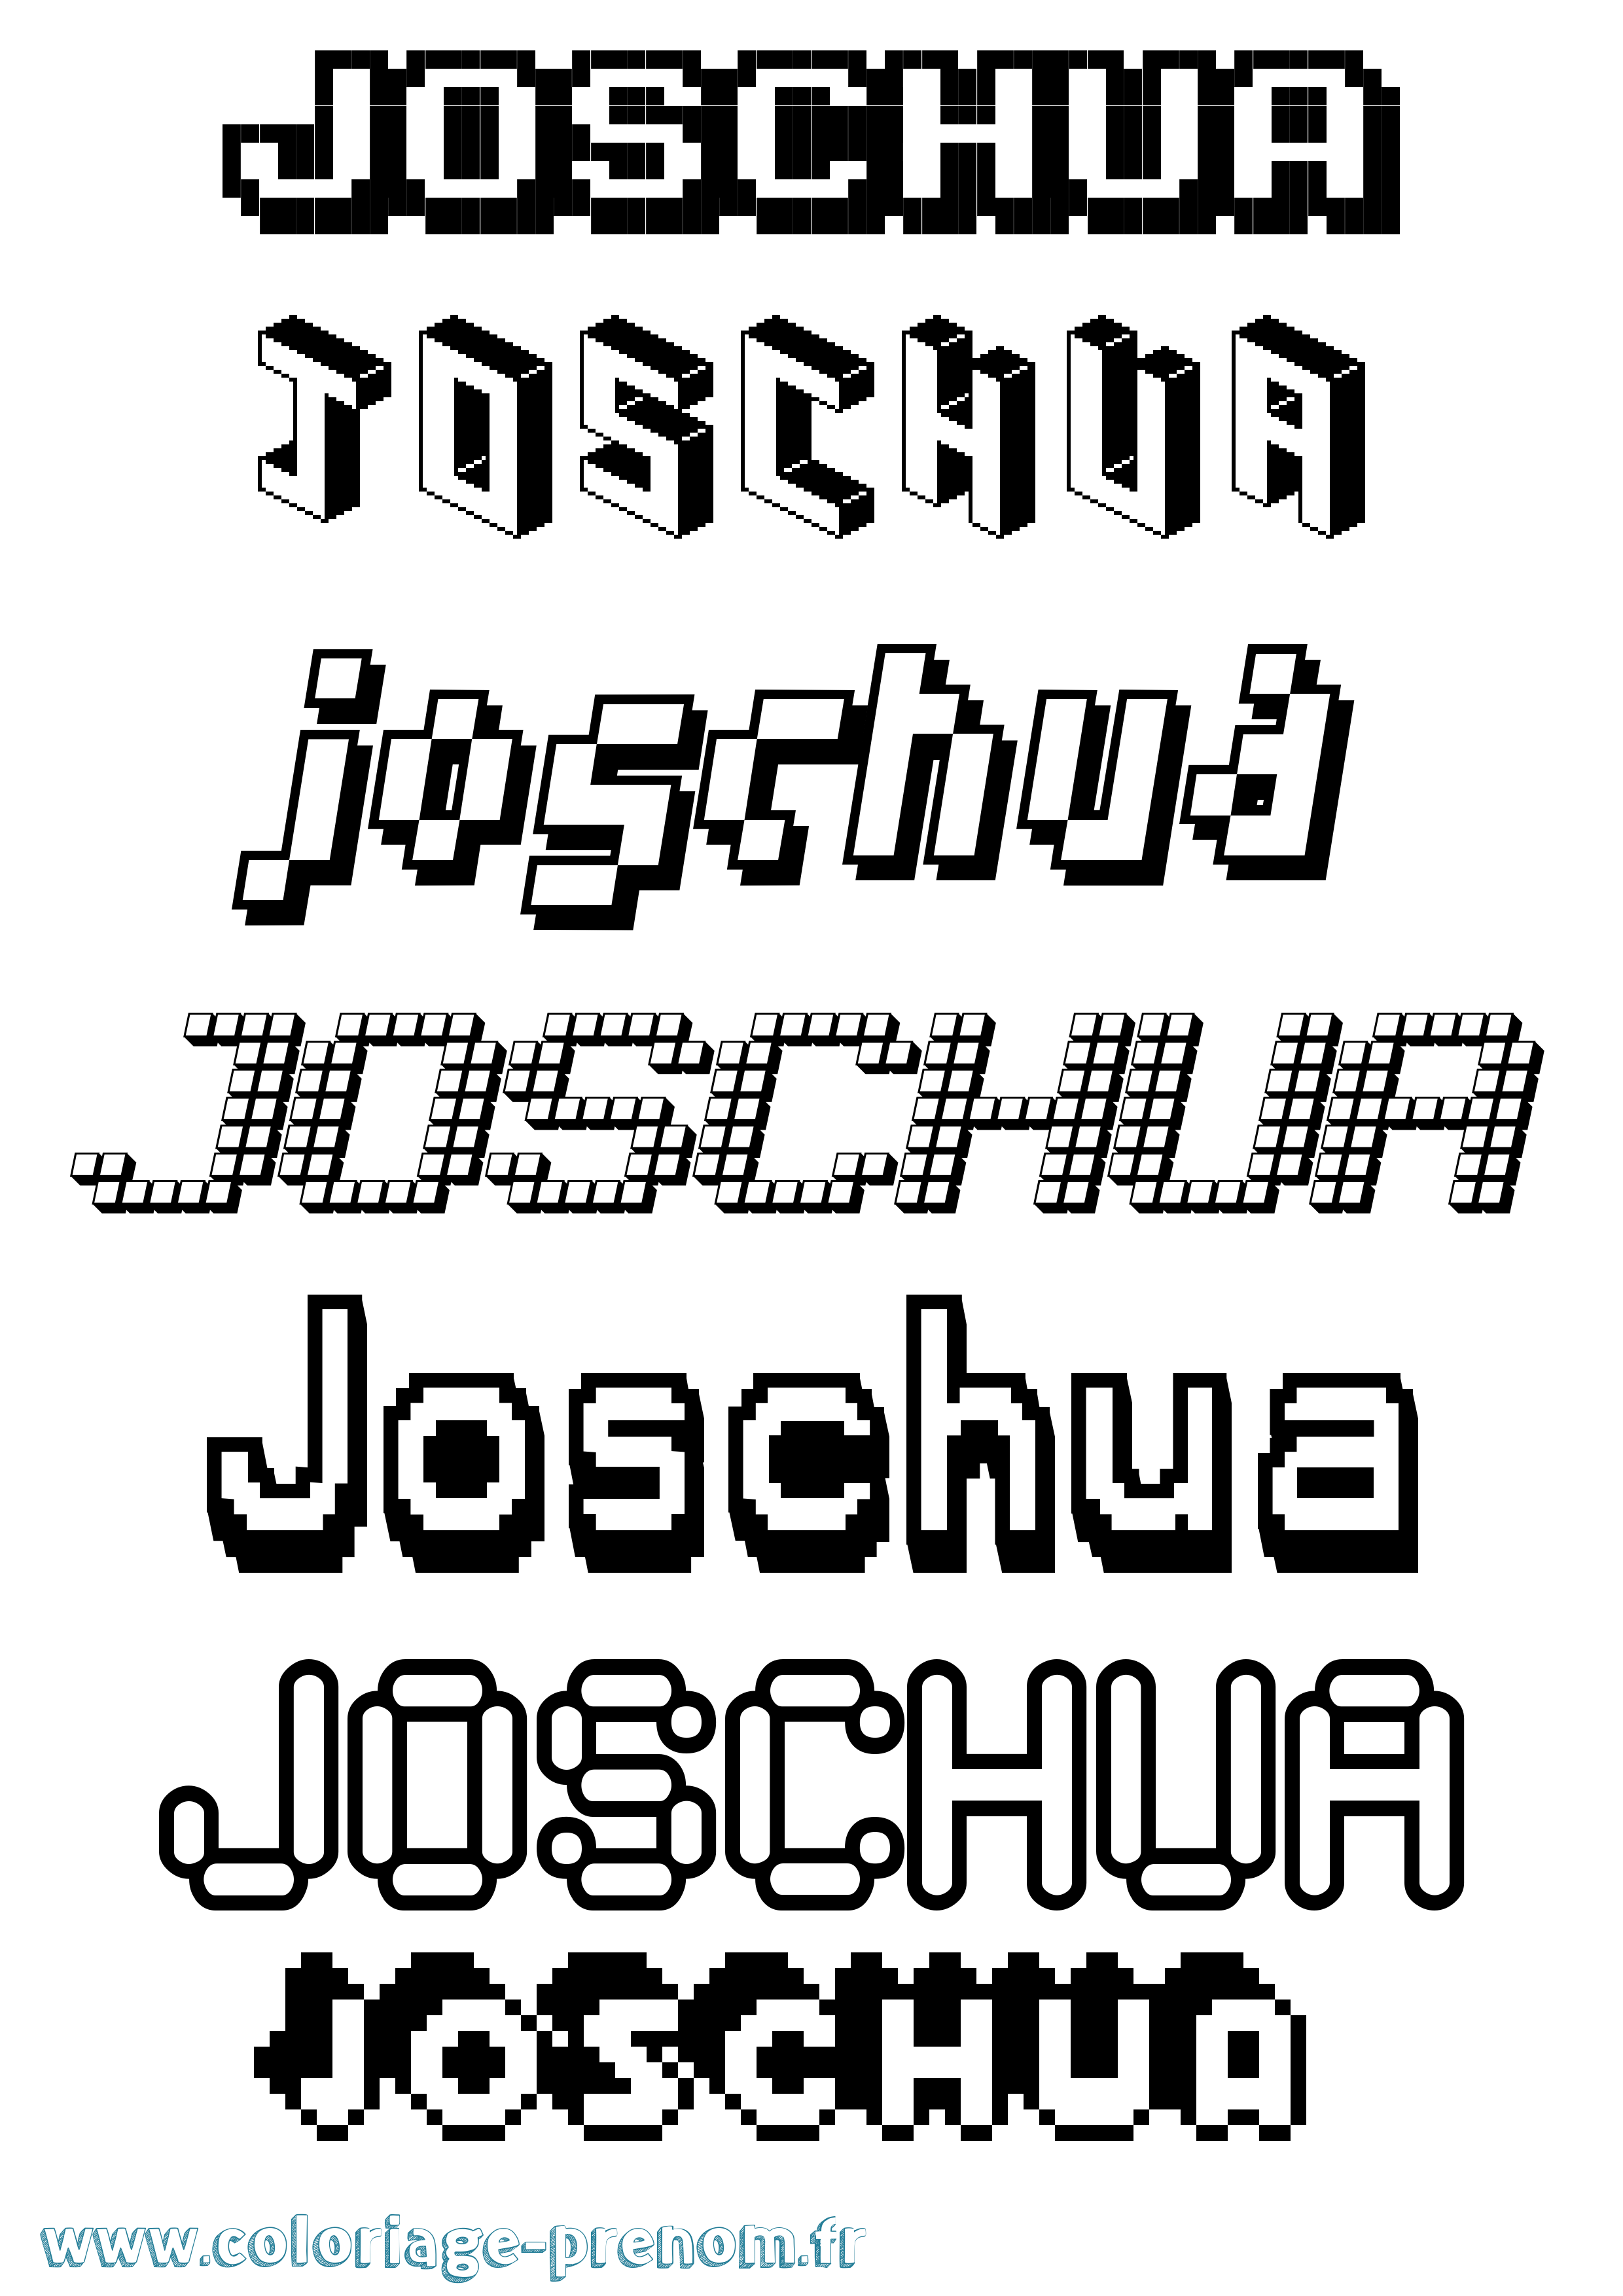 Coloriage prénom Joschua Pixel